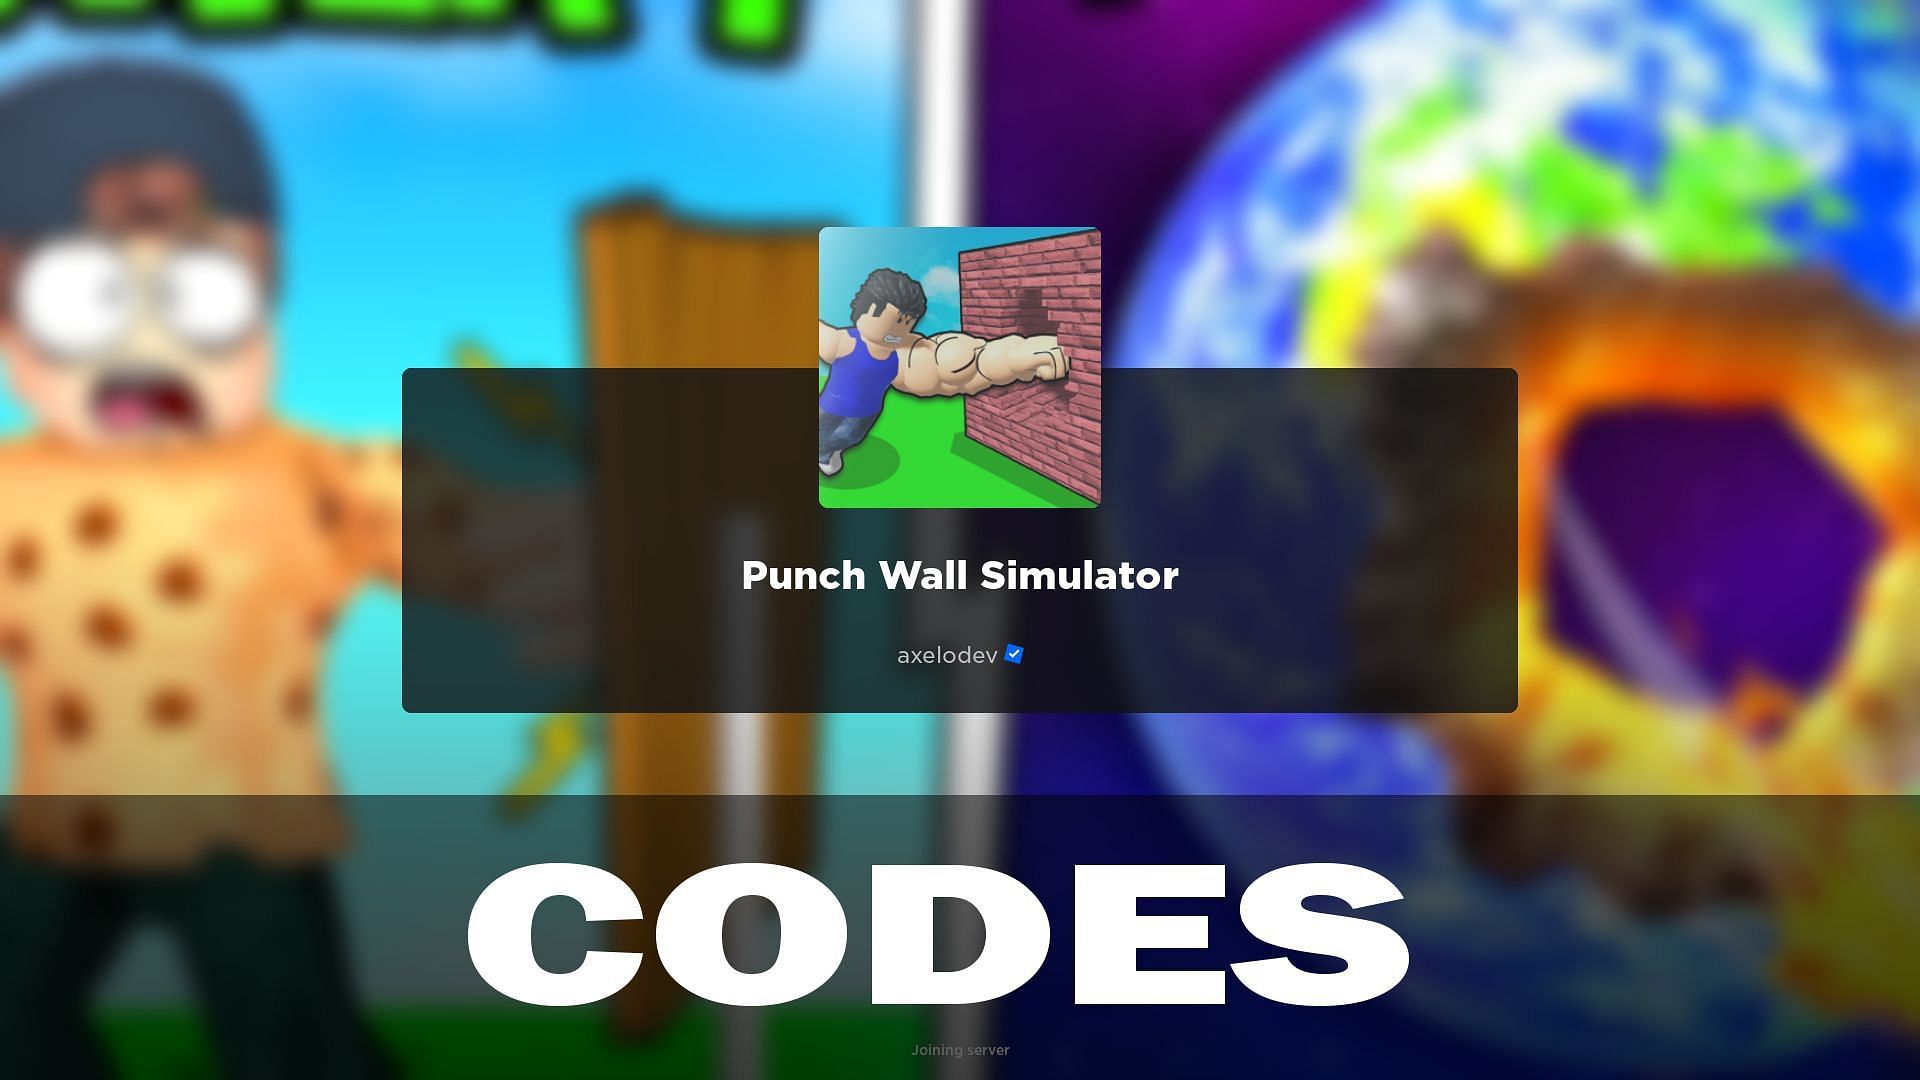 Punch Wall Simulator codes